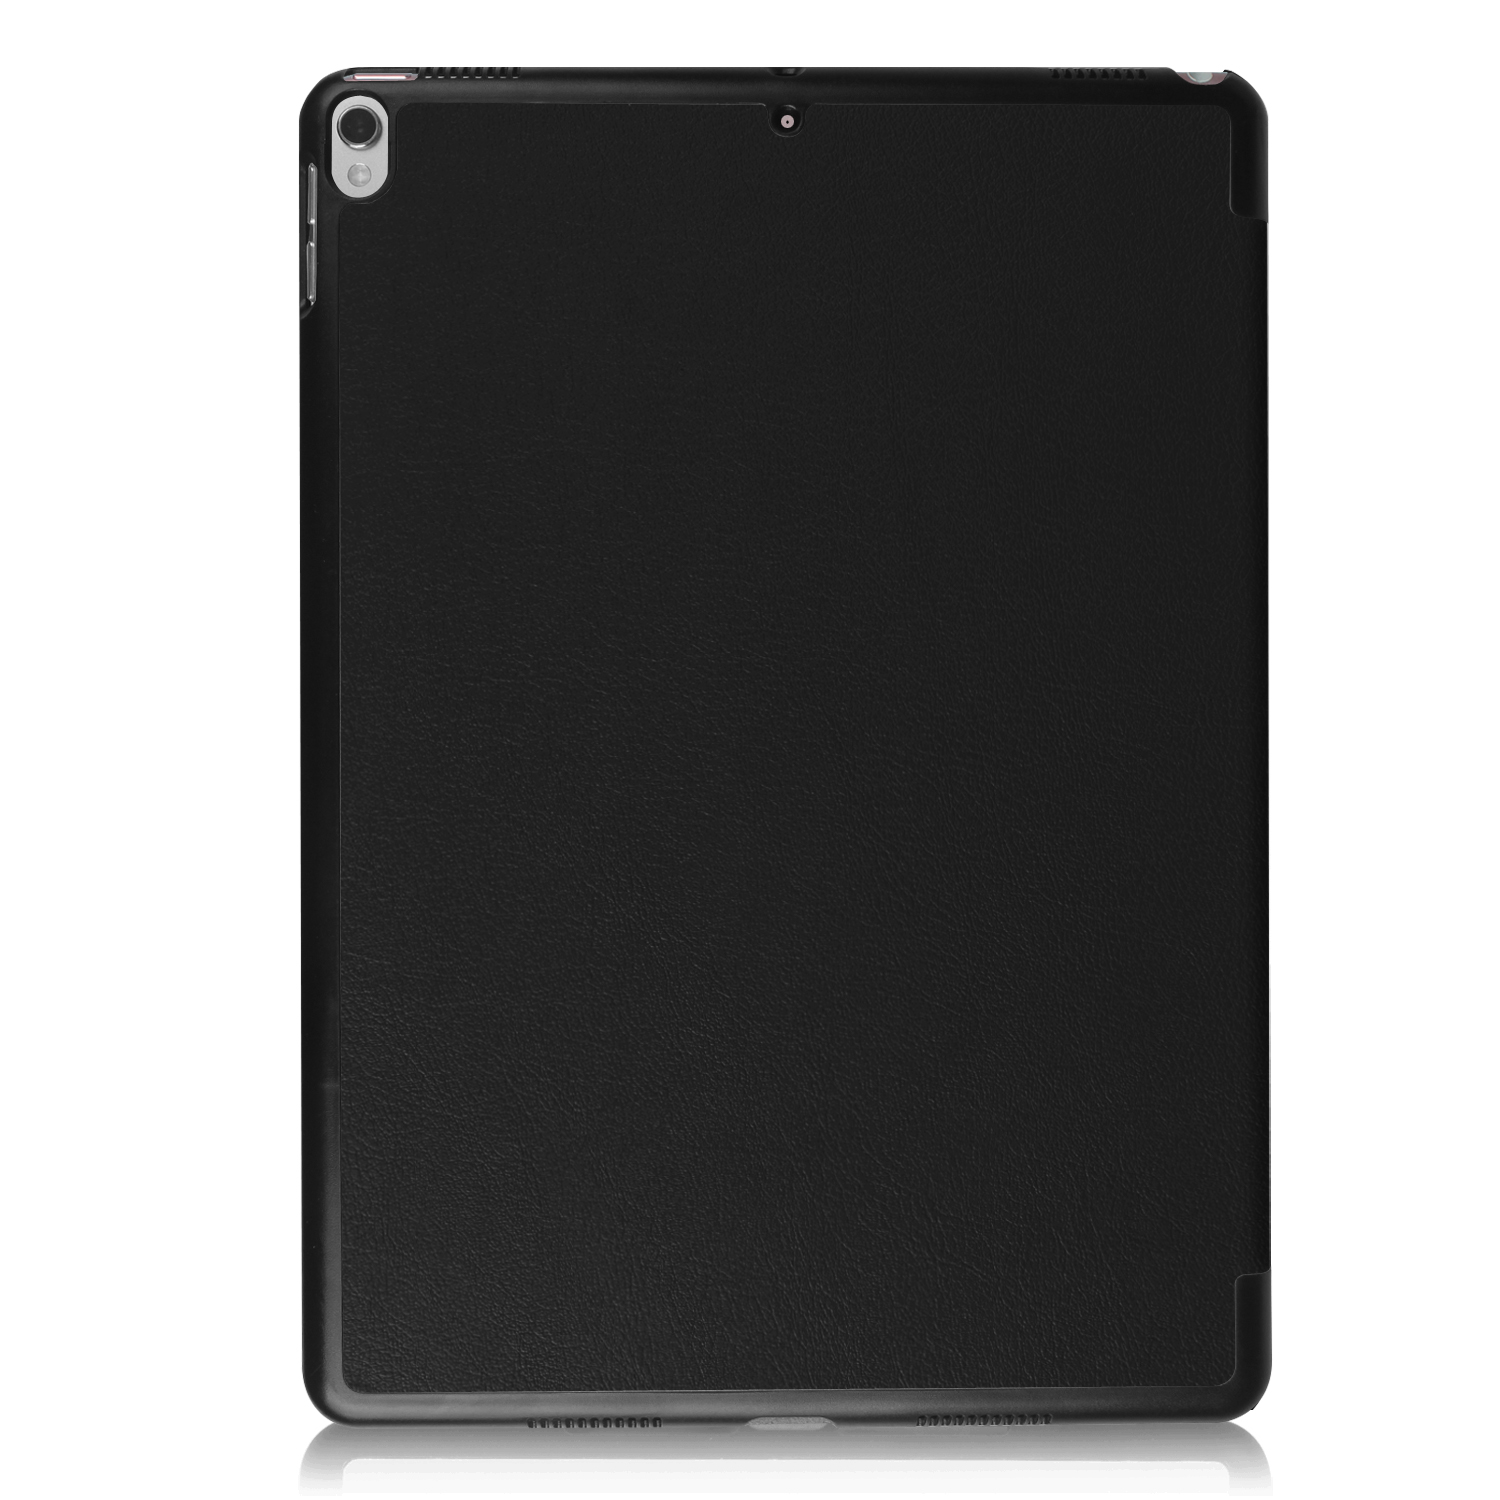 LOBWERK Hülle Schutzhülle iPad 2019 3 Apple Zoll 2017 Pro Bookcover 10.5 iPad für Schwarz Kunstleder, Air